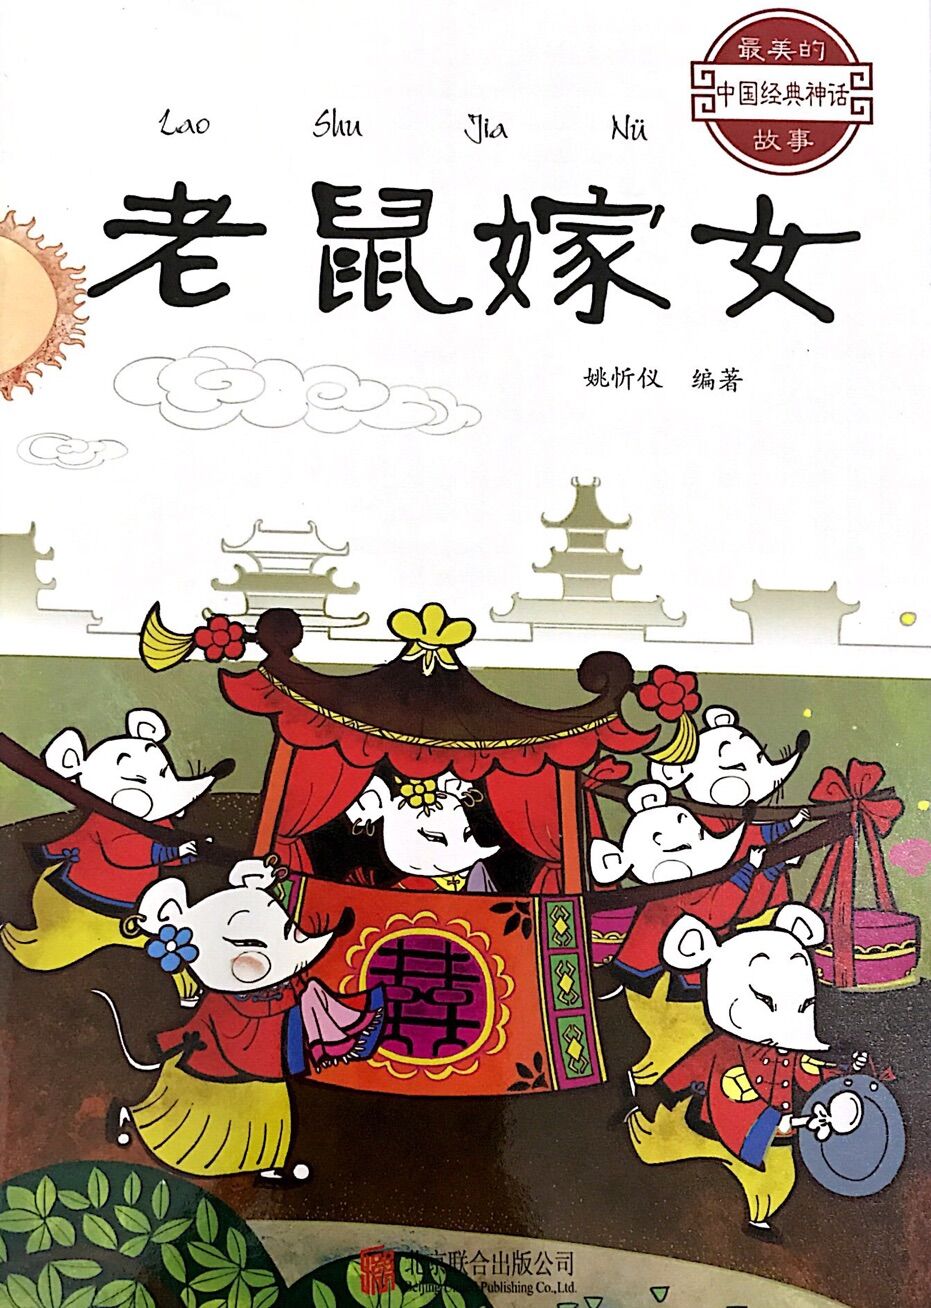 最美的中国经典神话故事:老鼠嫁女 | 博鸟绘本-绘本借阅,往返包邮